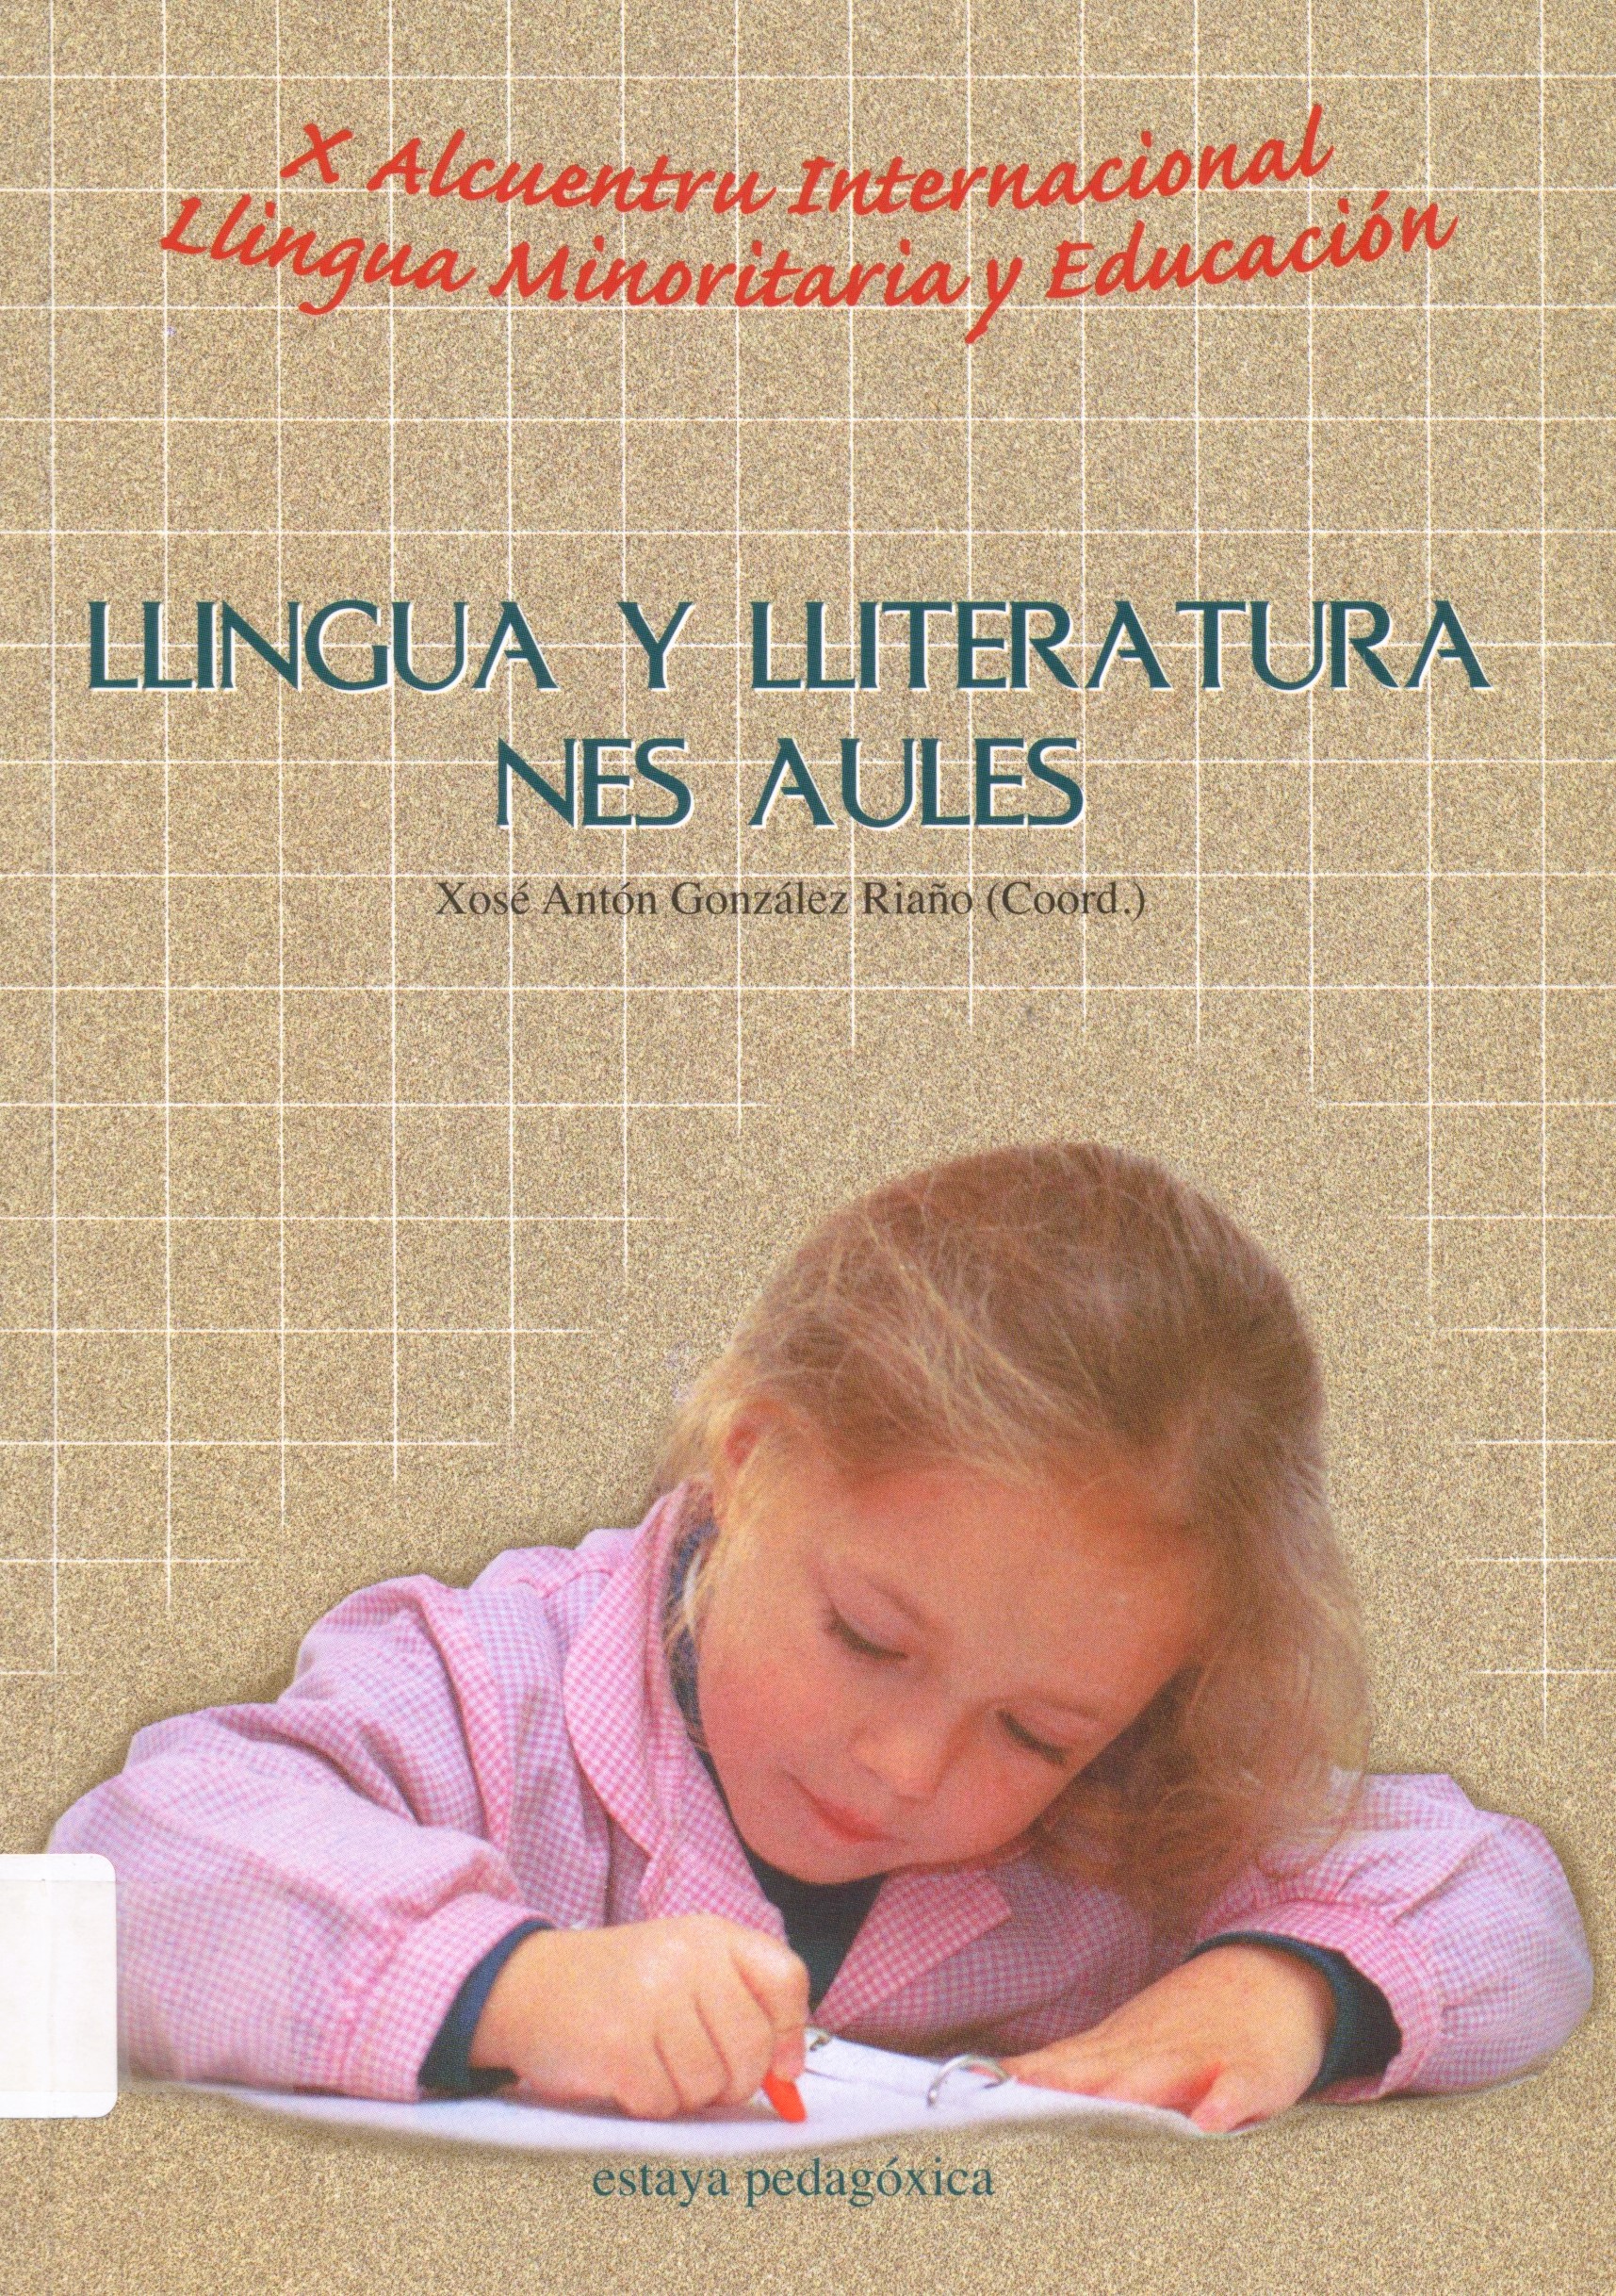 Imagen de portada del libro Llingua y lliteratura nes aules